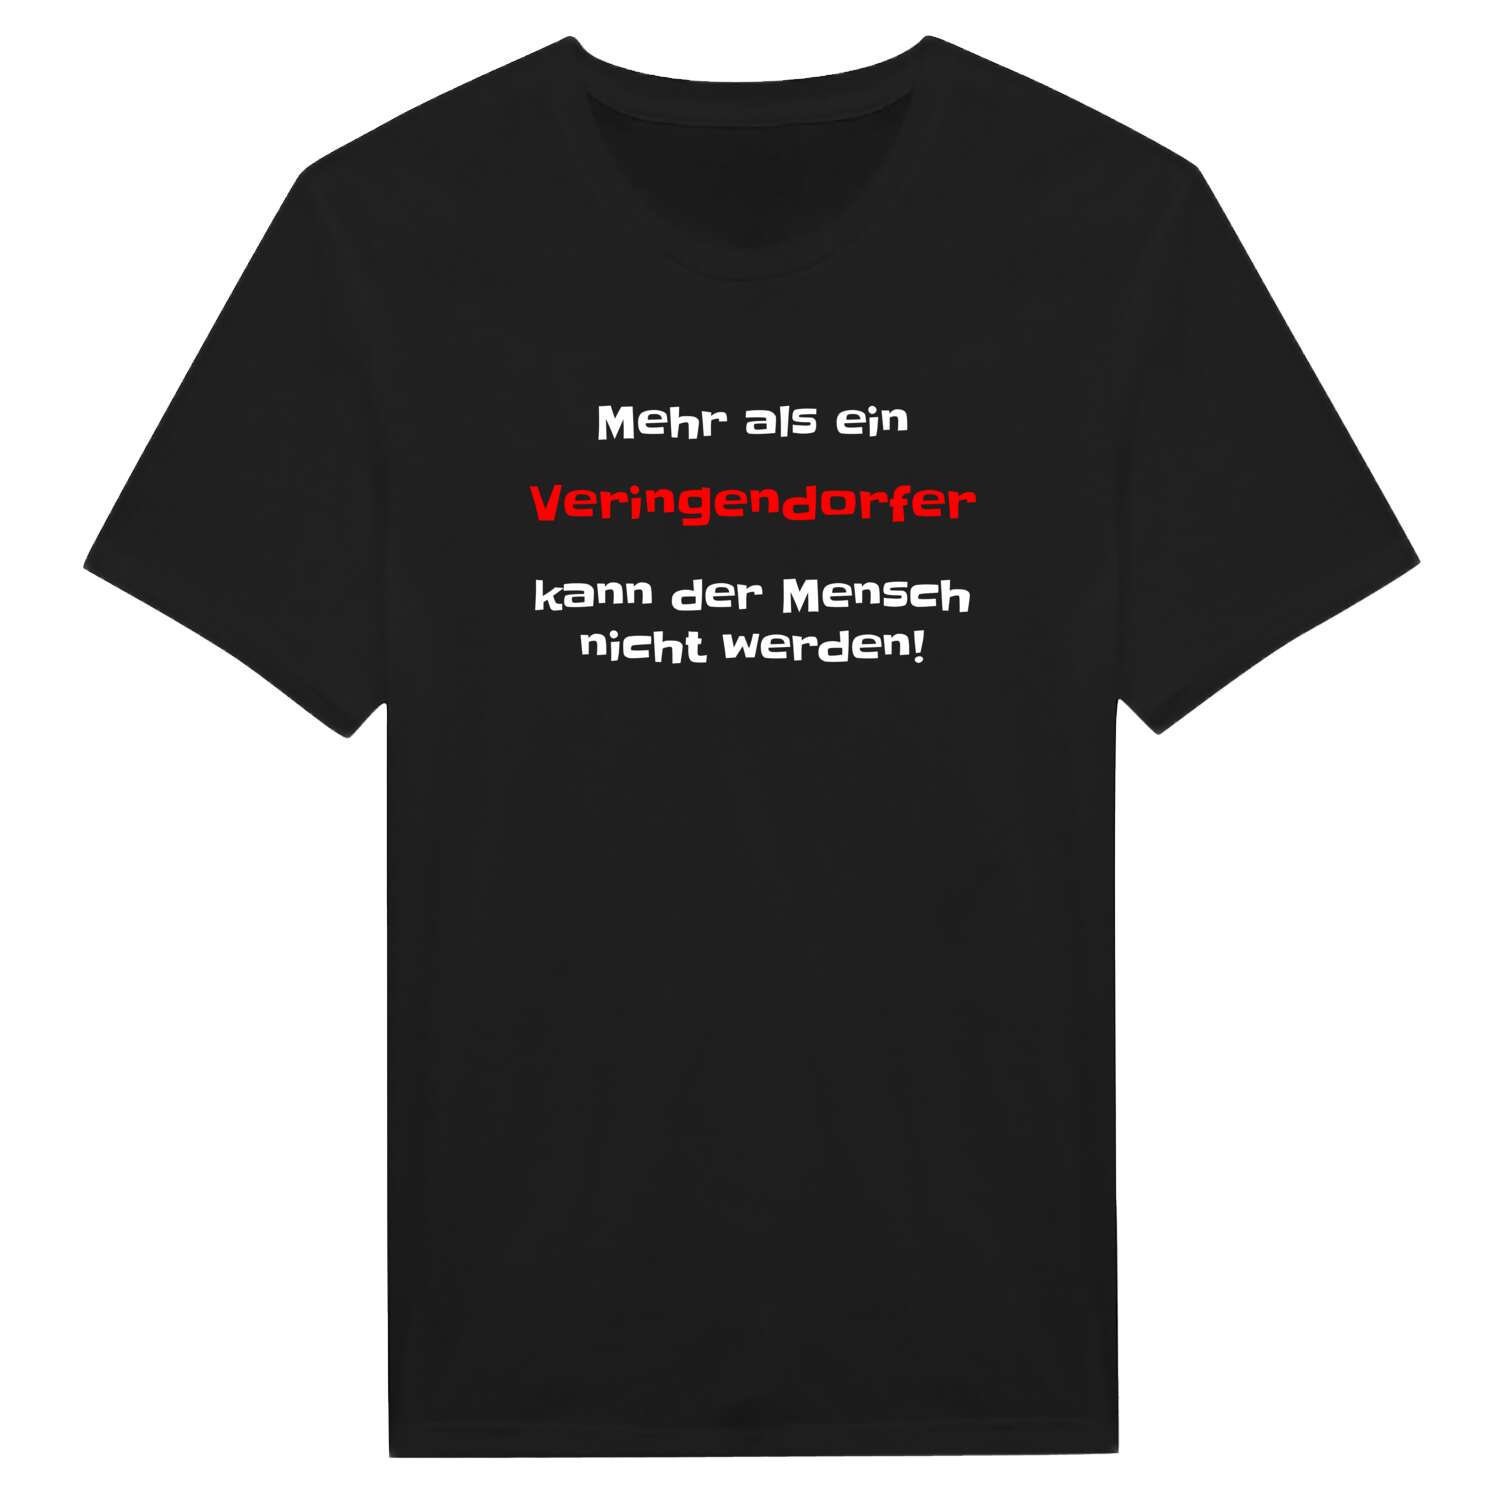 Veringendorf T-Shirt »Mehr als ein«